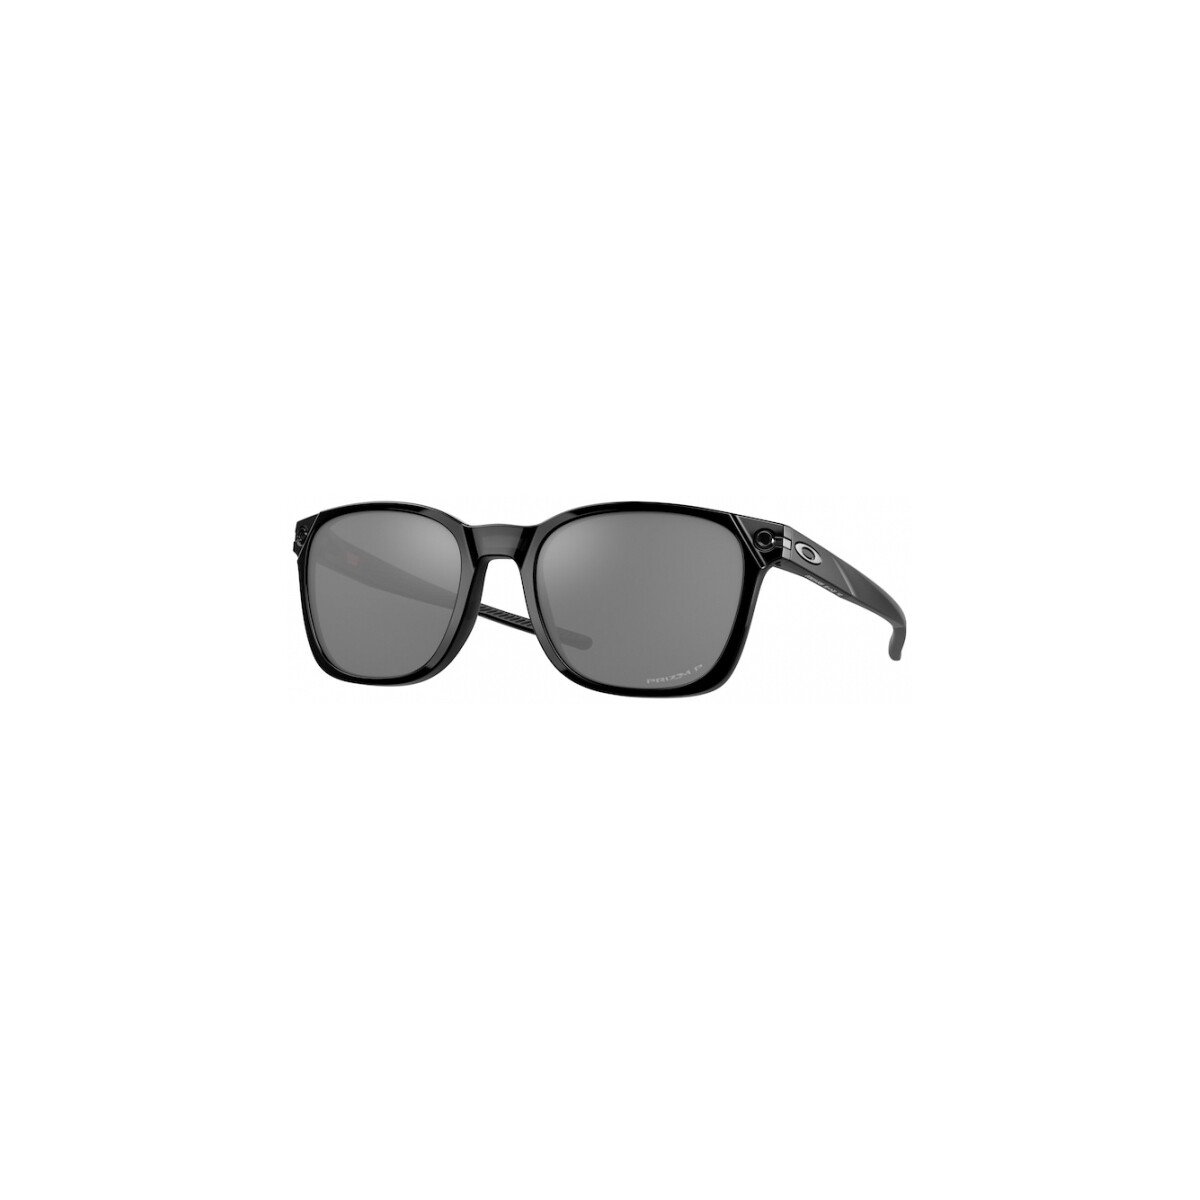 Orologi & Gioielli Uomo Occhiali da sole Oakley OO9018 OJECTOR Occhiali da sole, Nero/Nero, 55 mm Nero